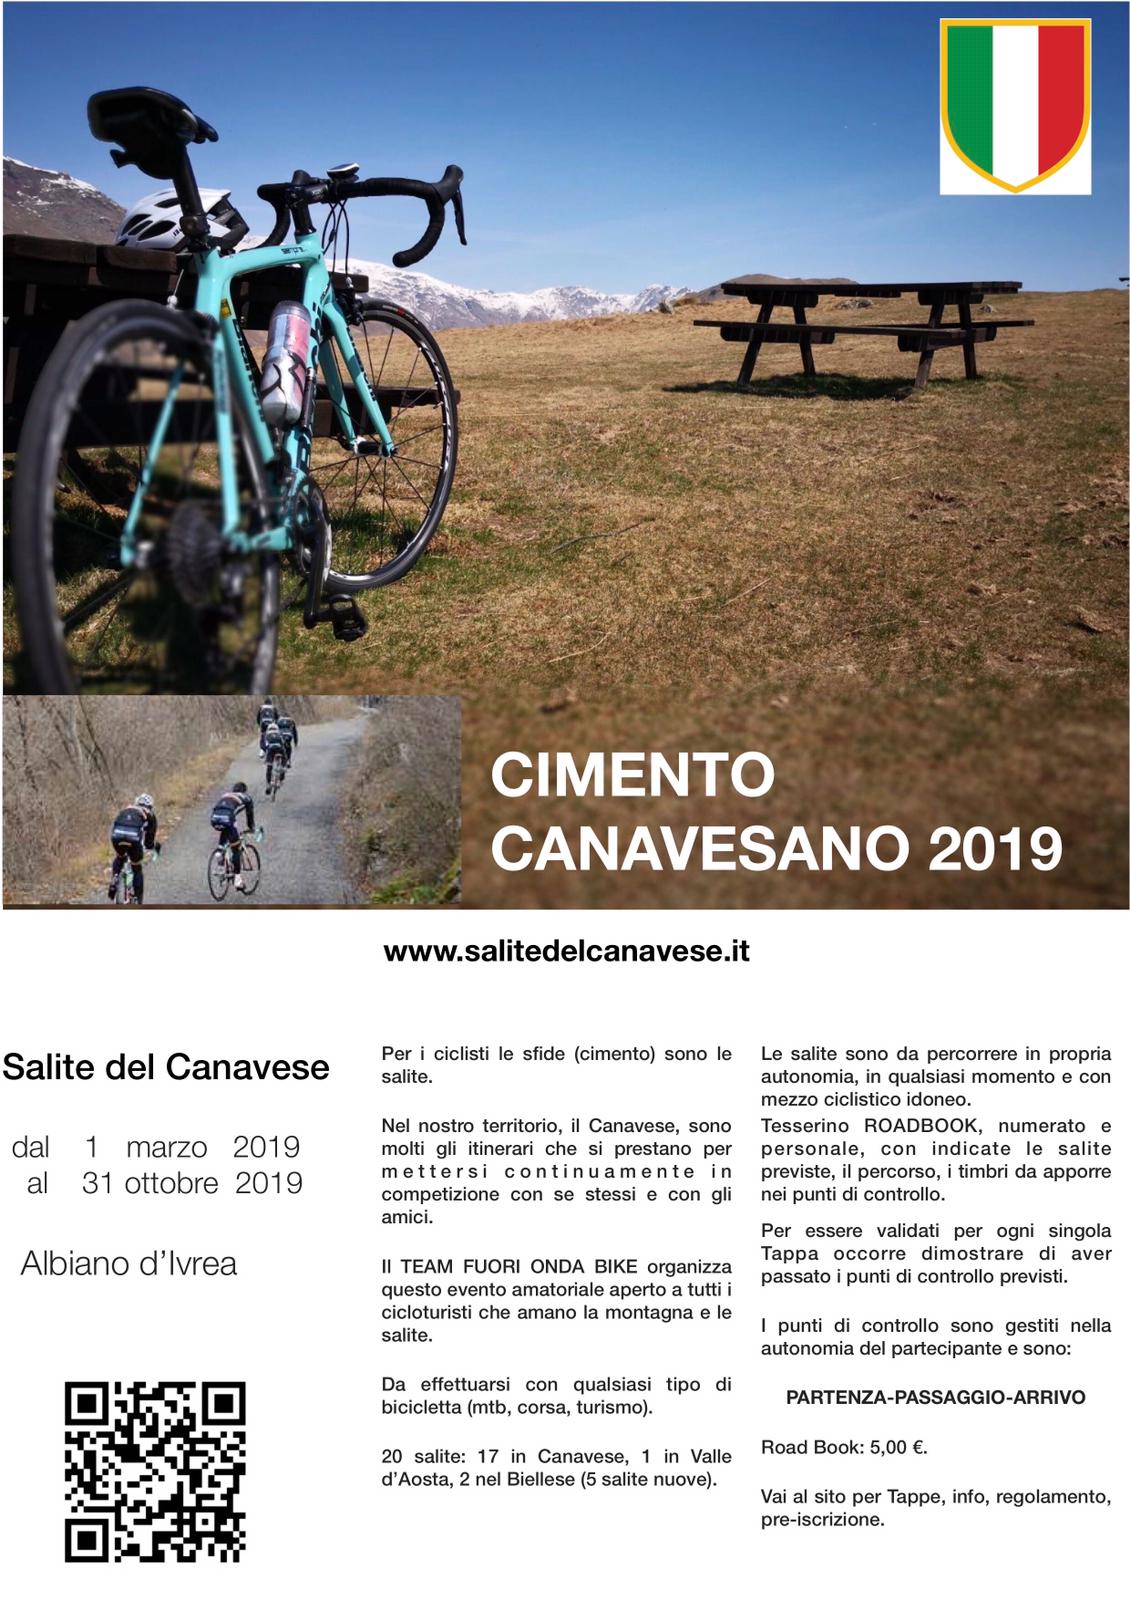 Presentata l’edizione 2019 Cimento-Canavesano